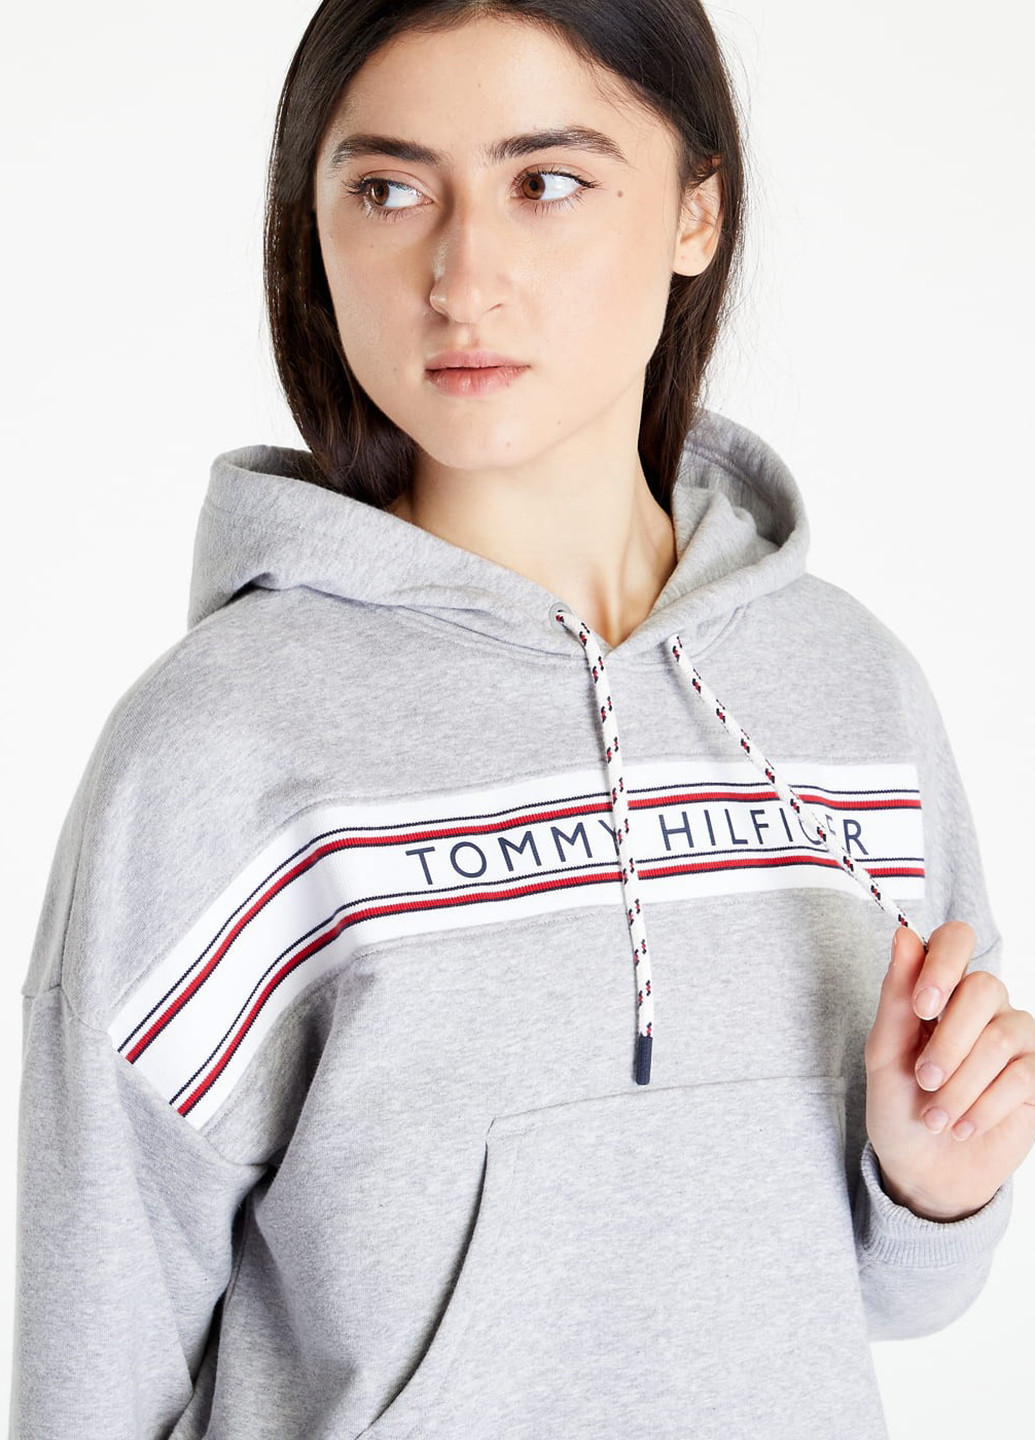 Худі Tommy Hilfiger логотипи світло-сірі кежуали трикотаж, бавовна